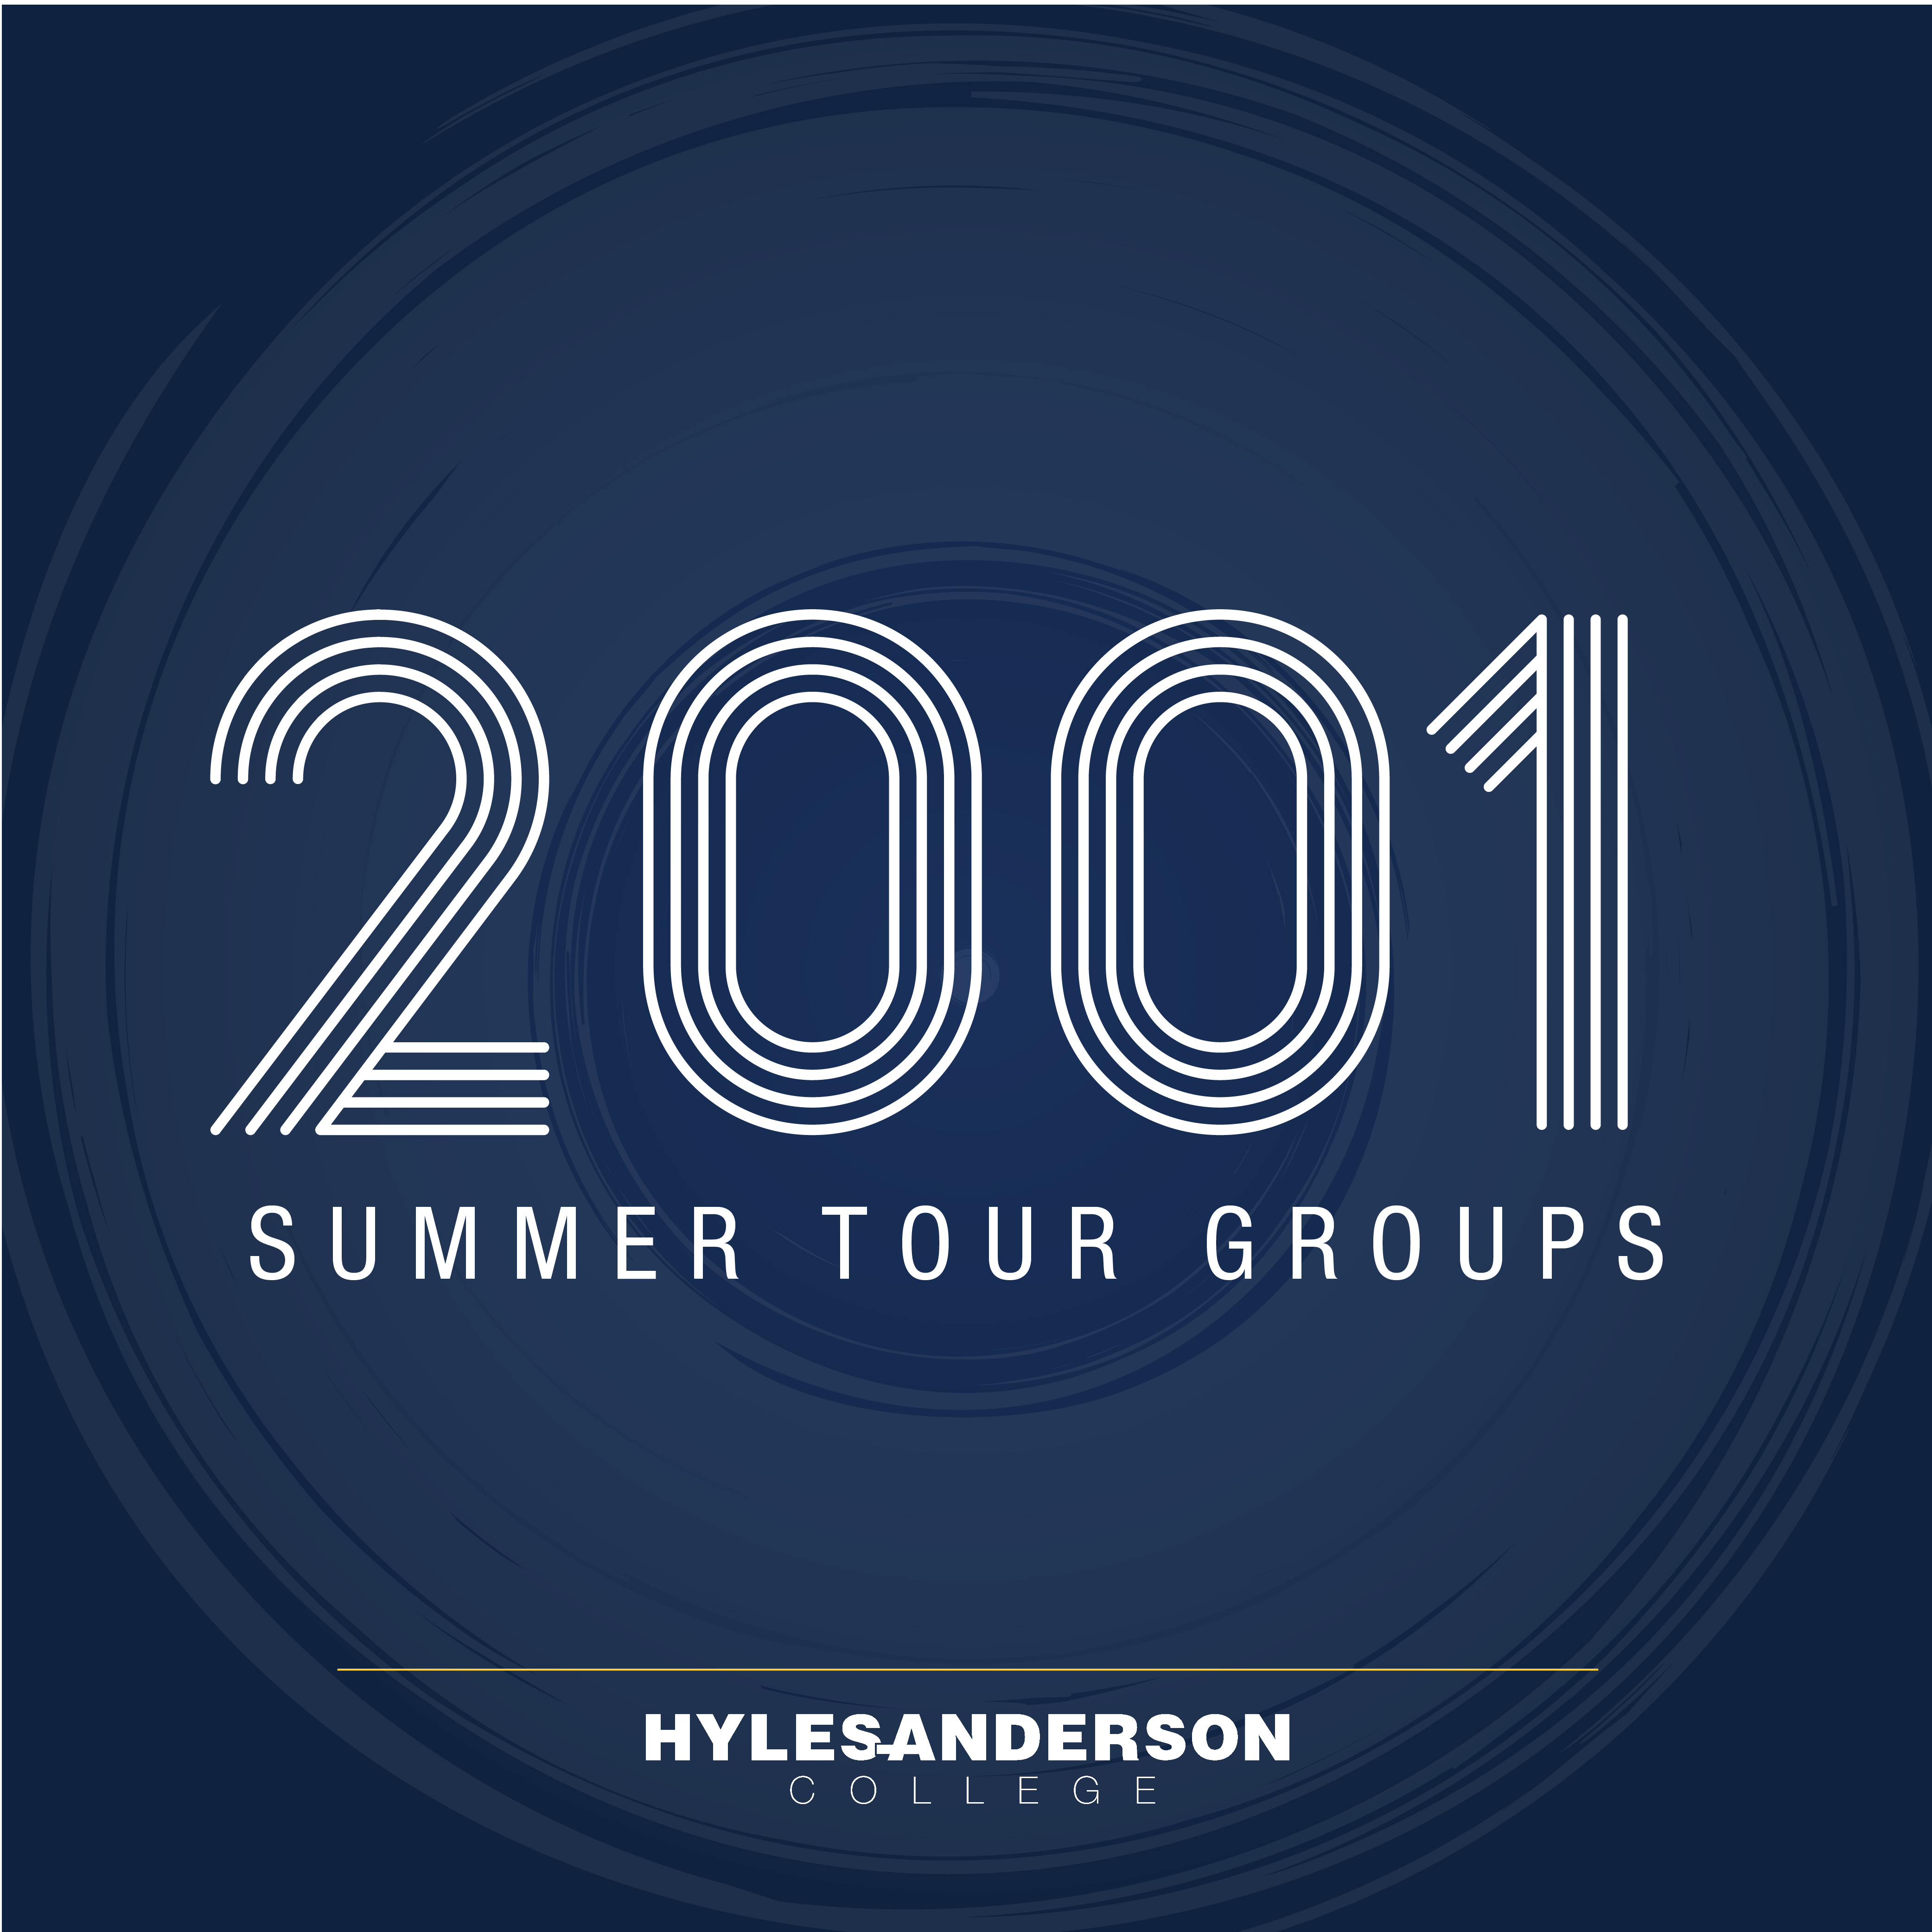 2001 Summer Tour